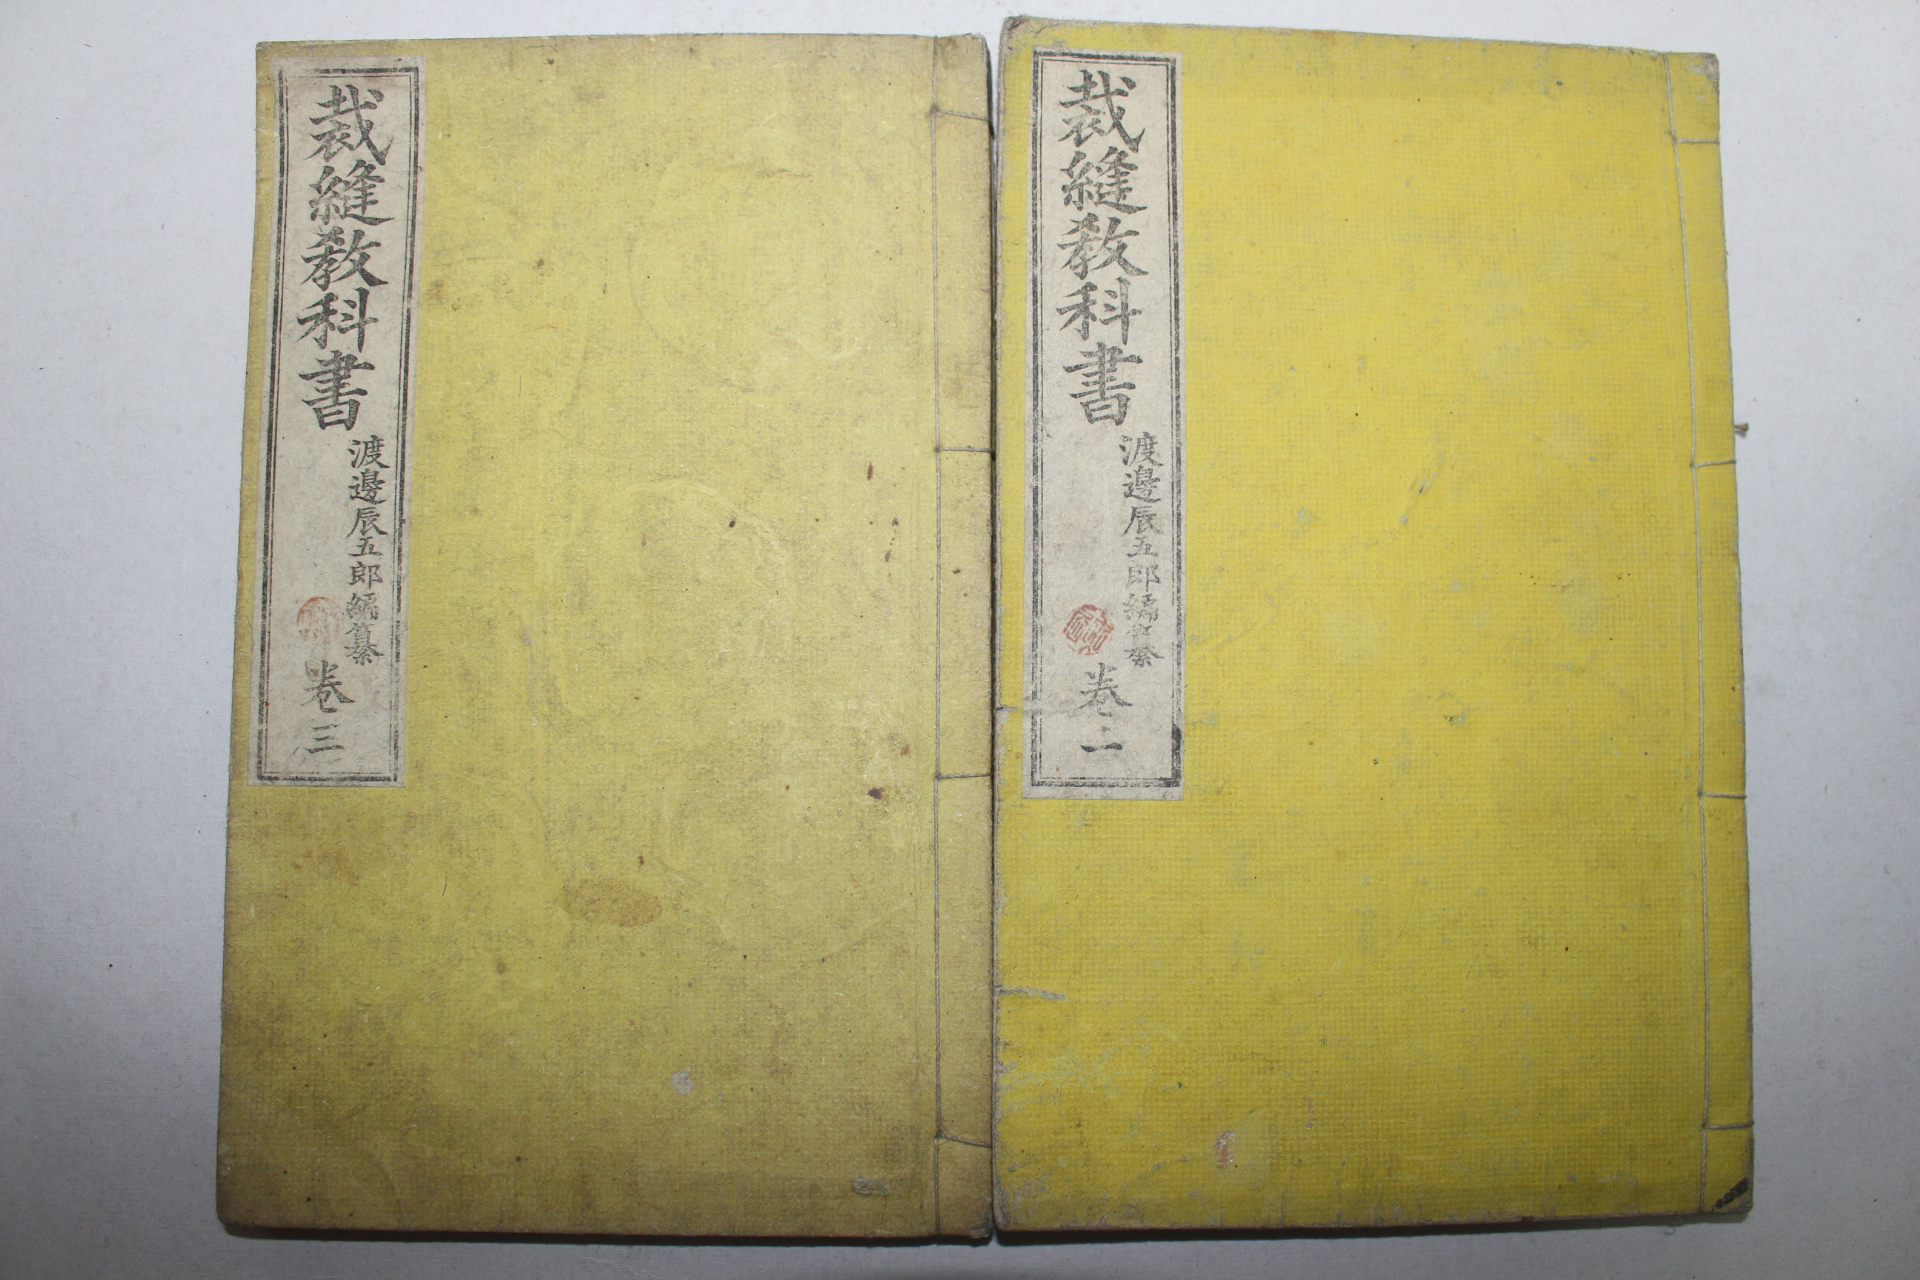 1897년(明治30年) 일본간행 재봉교과서(裁縫敎科書)권1,3   2책